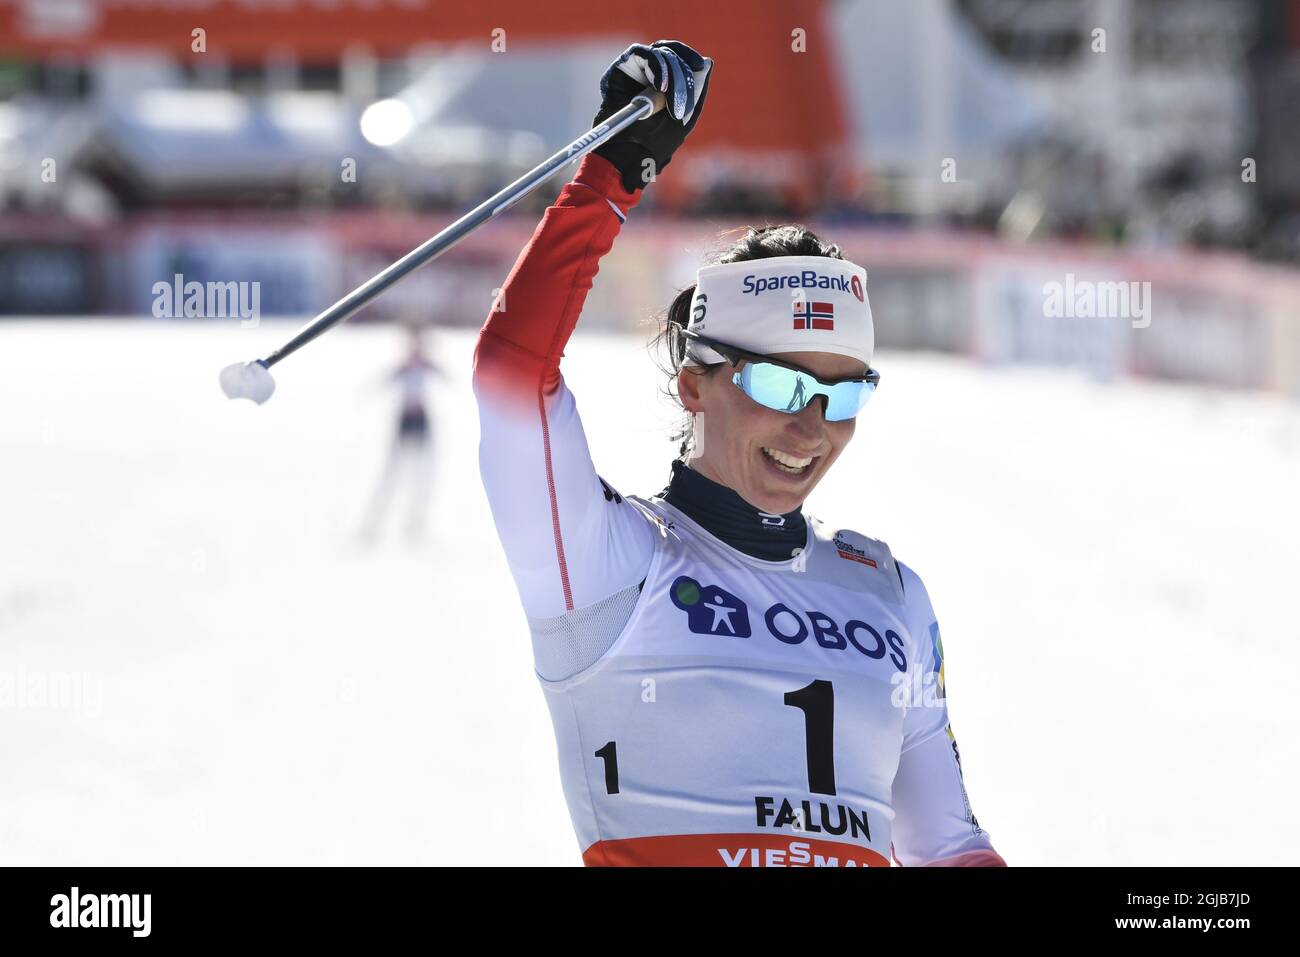 FALUN 20180318 Norwegens Marit Bjoergen Gewinner während der FIS 10 km Cross Country Free Style Sonntag, 18. März 2018 in Falun Schweden. Foto: Ulf Palm / TT kod 9110 Stockfoto